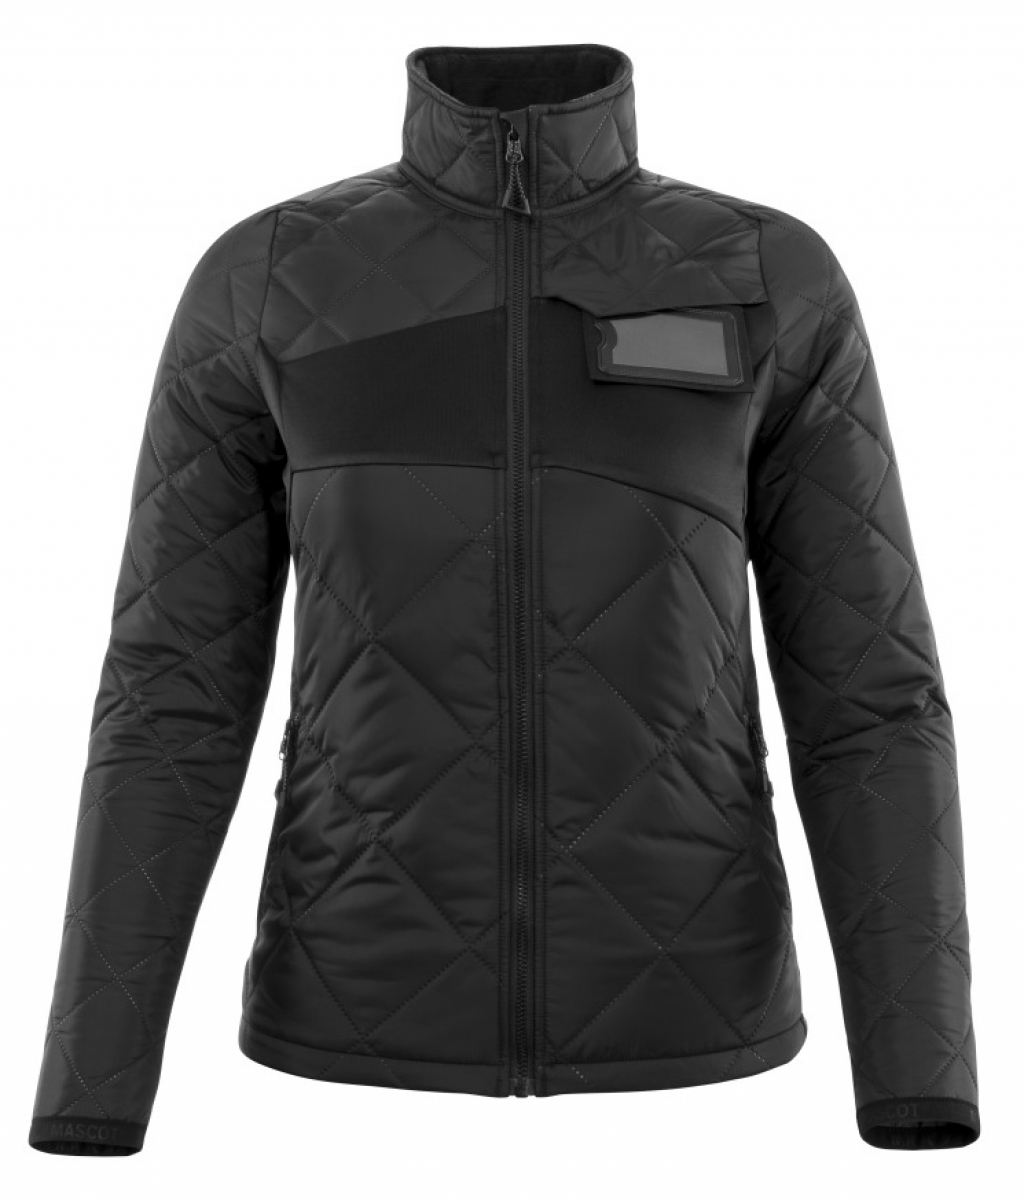 MASCOT-Workwear, Klteschutz, Damen Winterjacke, 260 g/m, schwarz